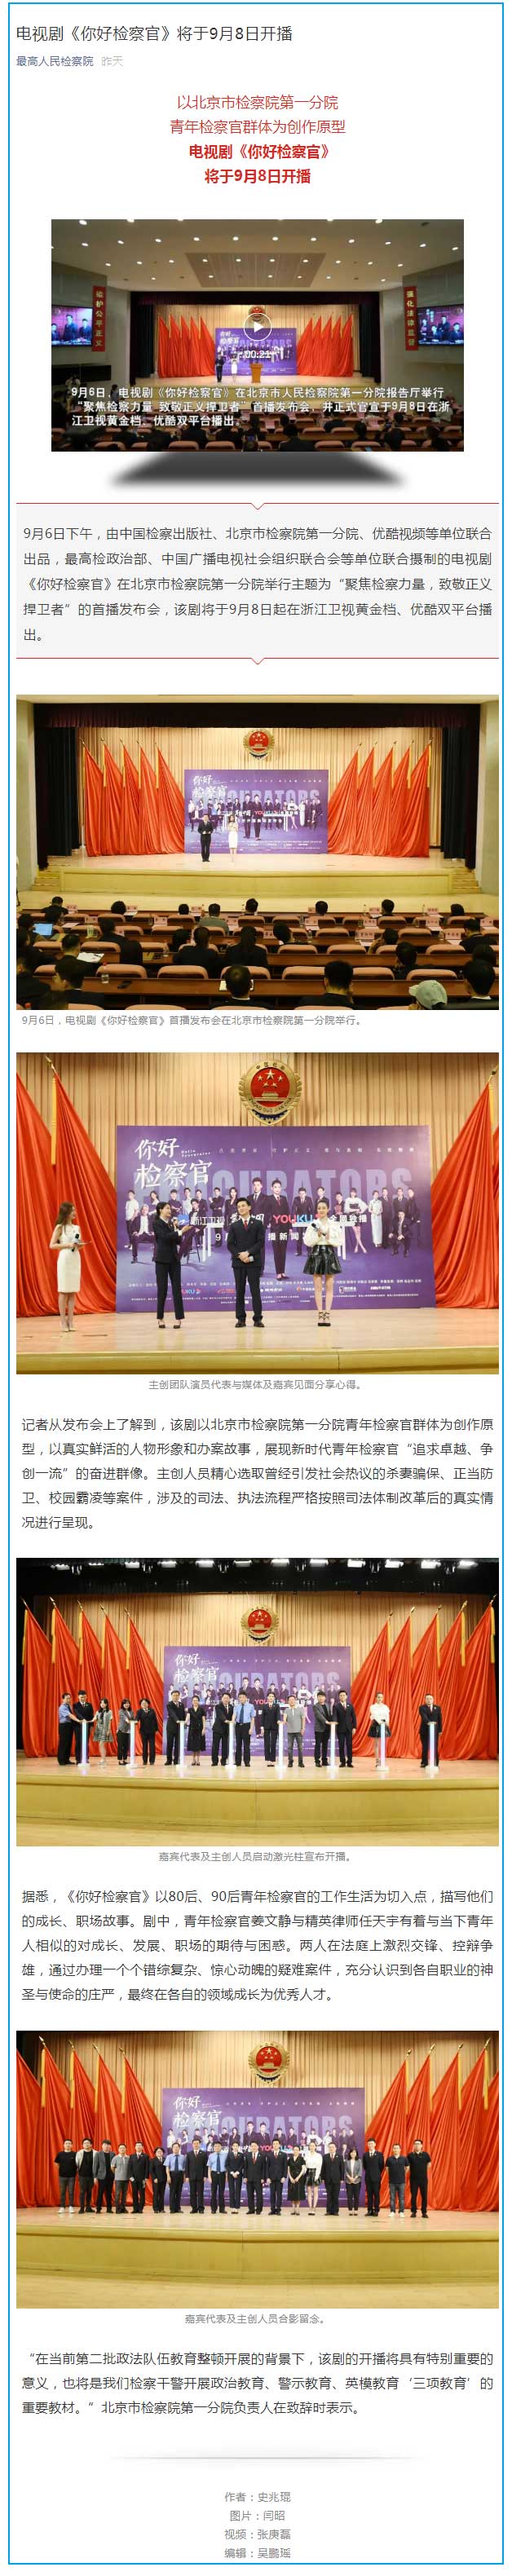 电视剧《你好检察官》将于9月8日开播 是以北京第一分院青年检察官群体为创作原型